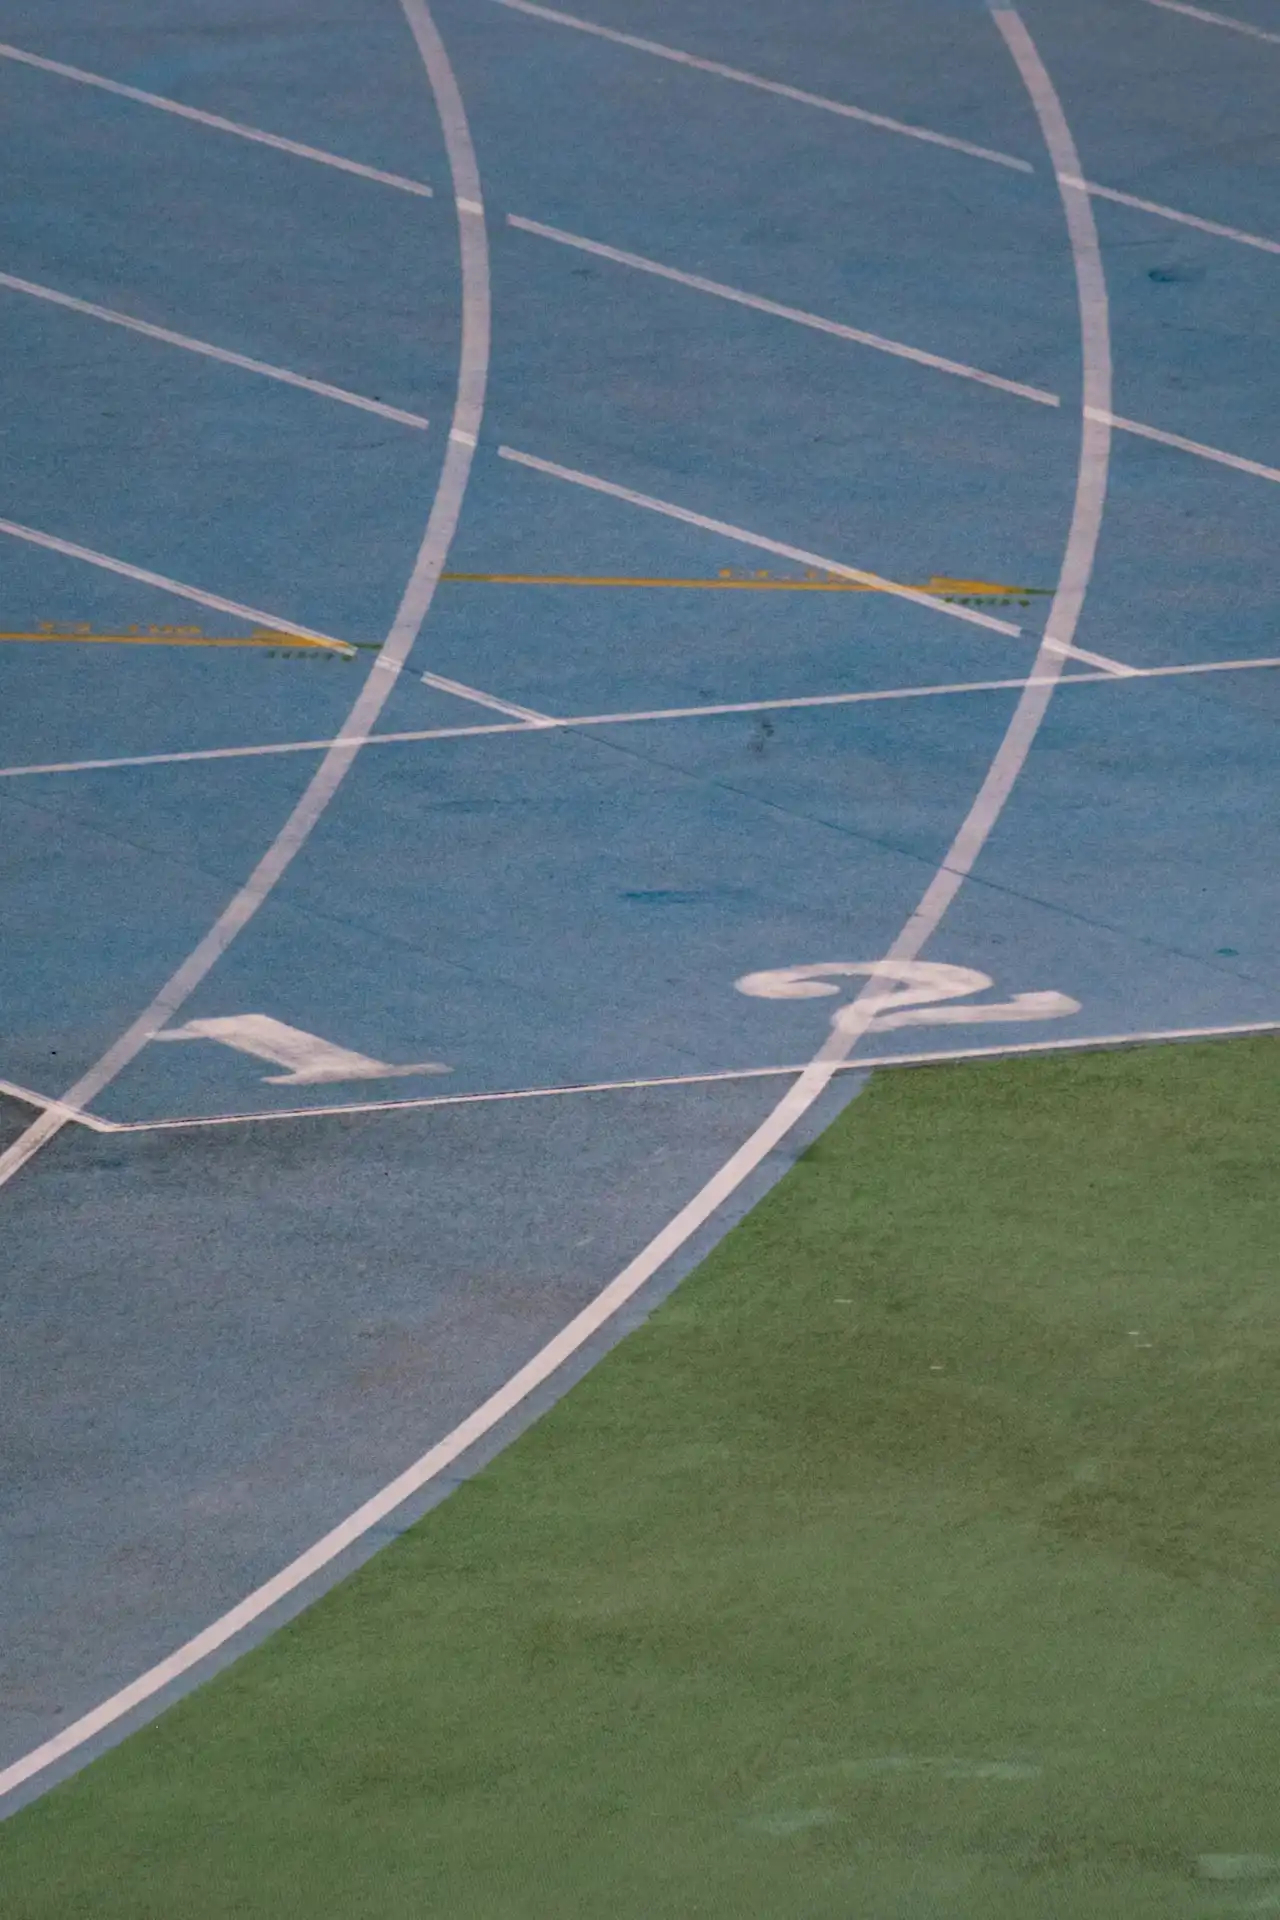 Détail de la piste d'athlétisme du stade olympique de Barcelone